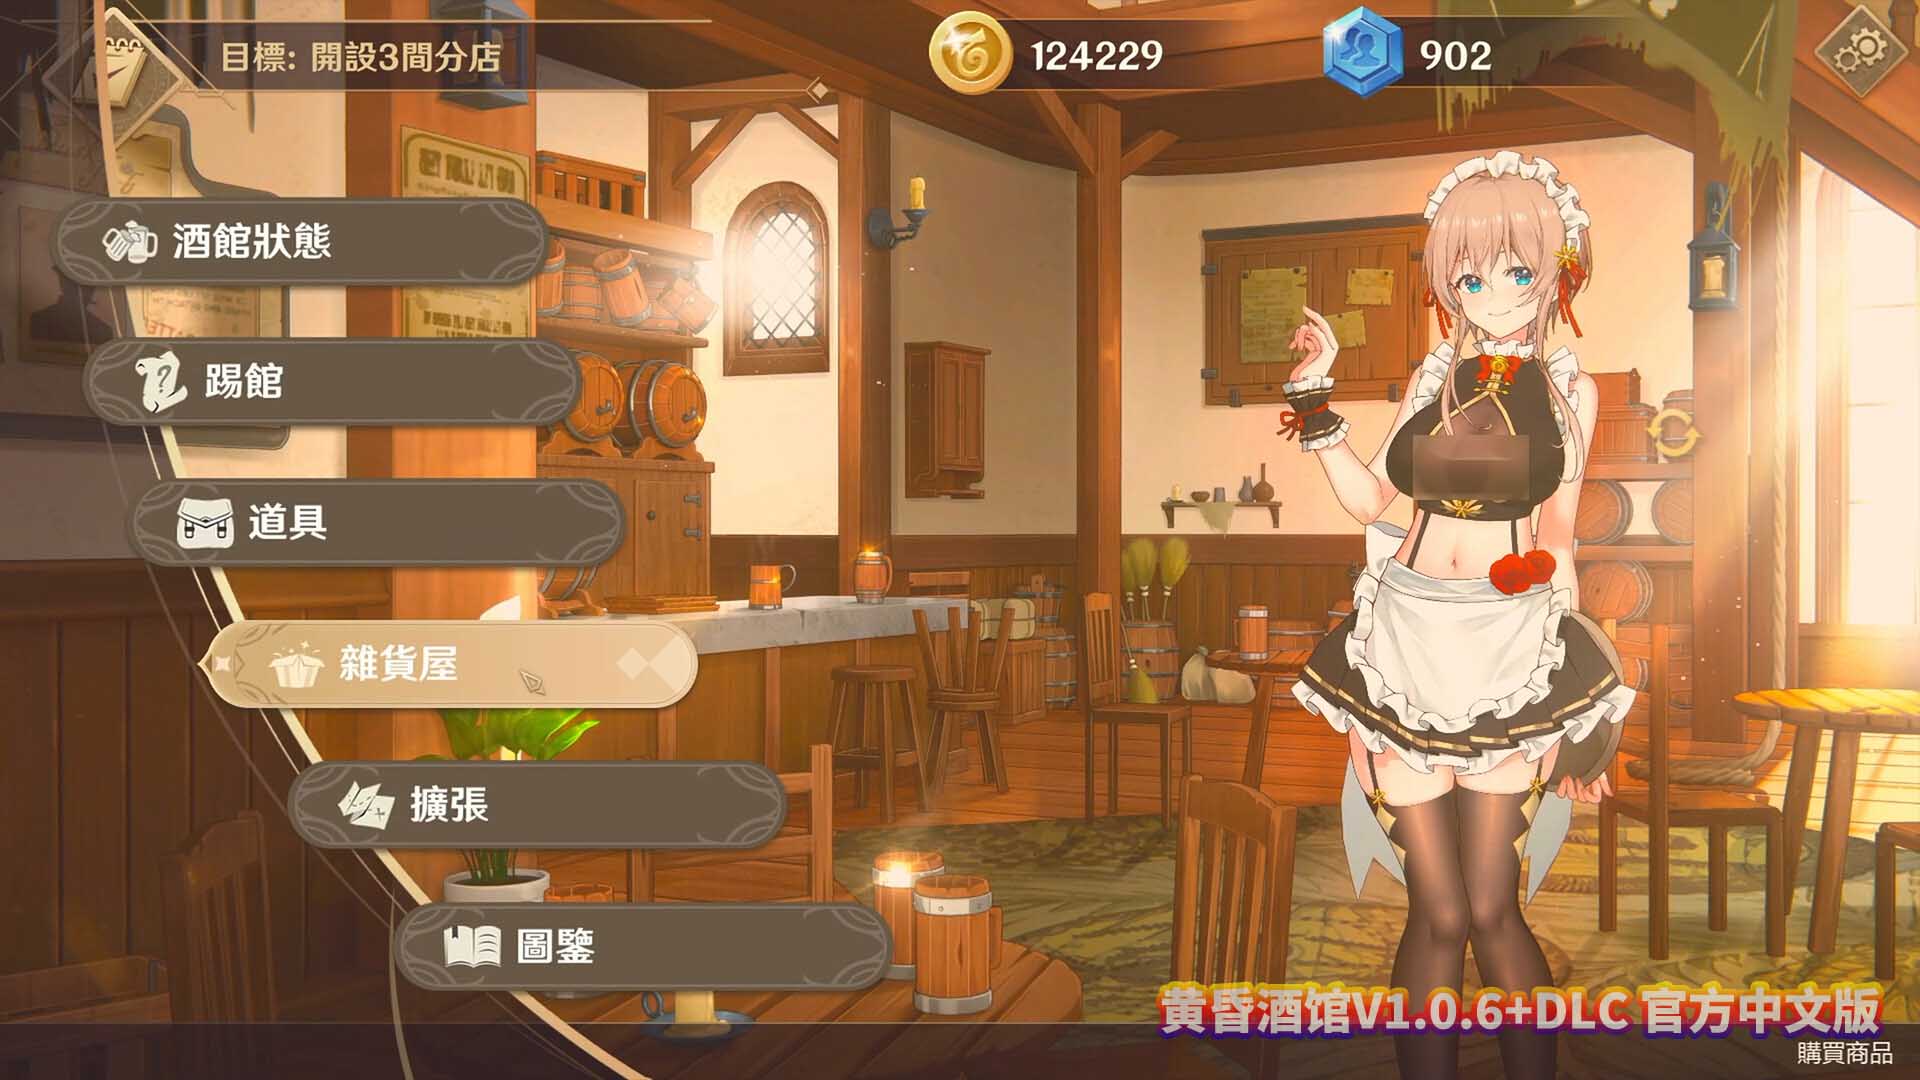 黄昏酒馆V1.0.6+DLC 官方中文版